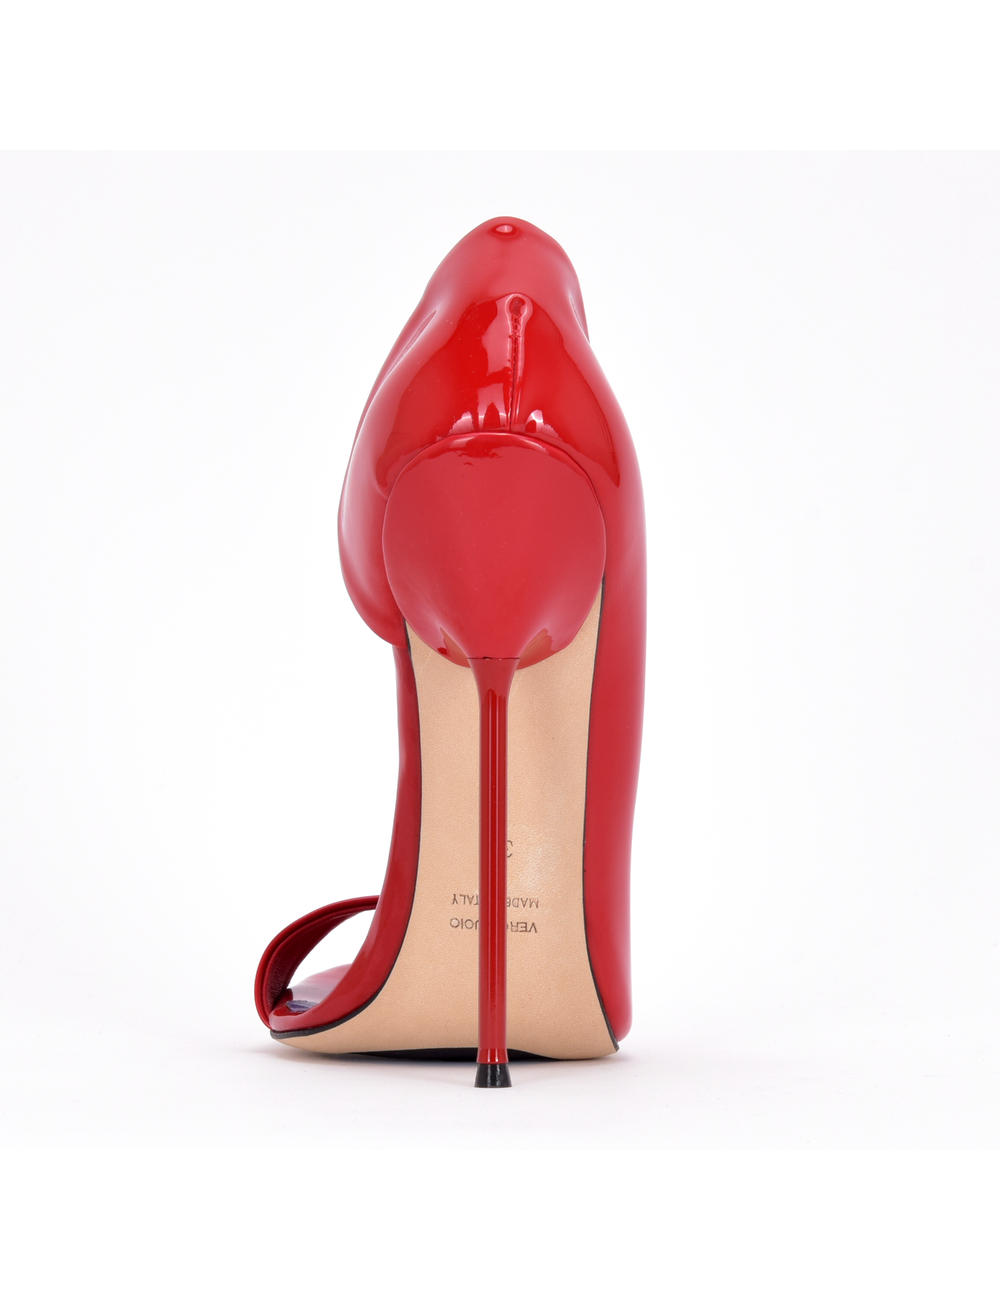 Sanctum Italienische Sandalen MONICA rot glänzend mit Metallabsatz mit lila Inlay